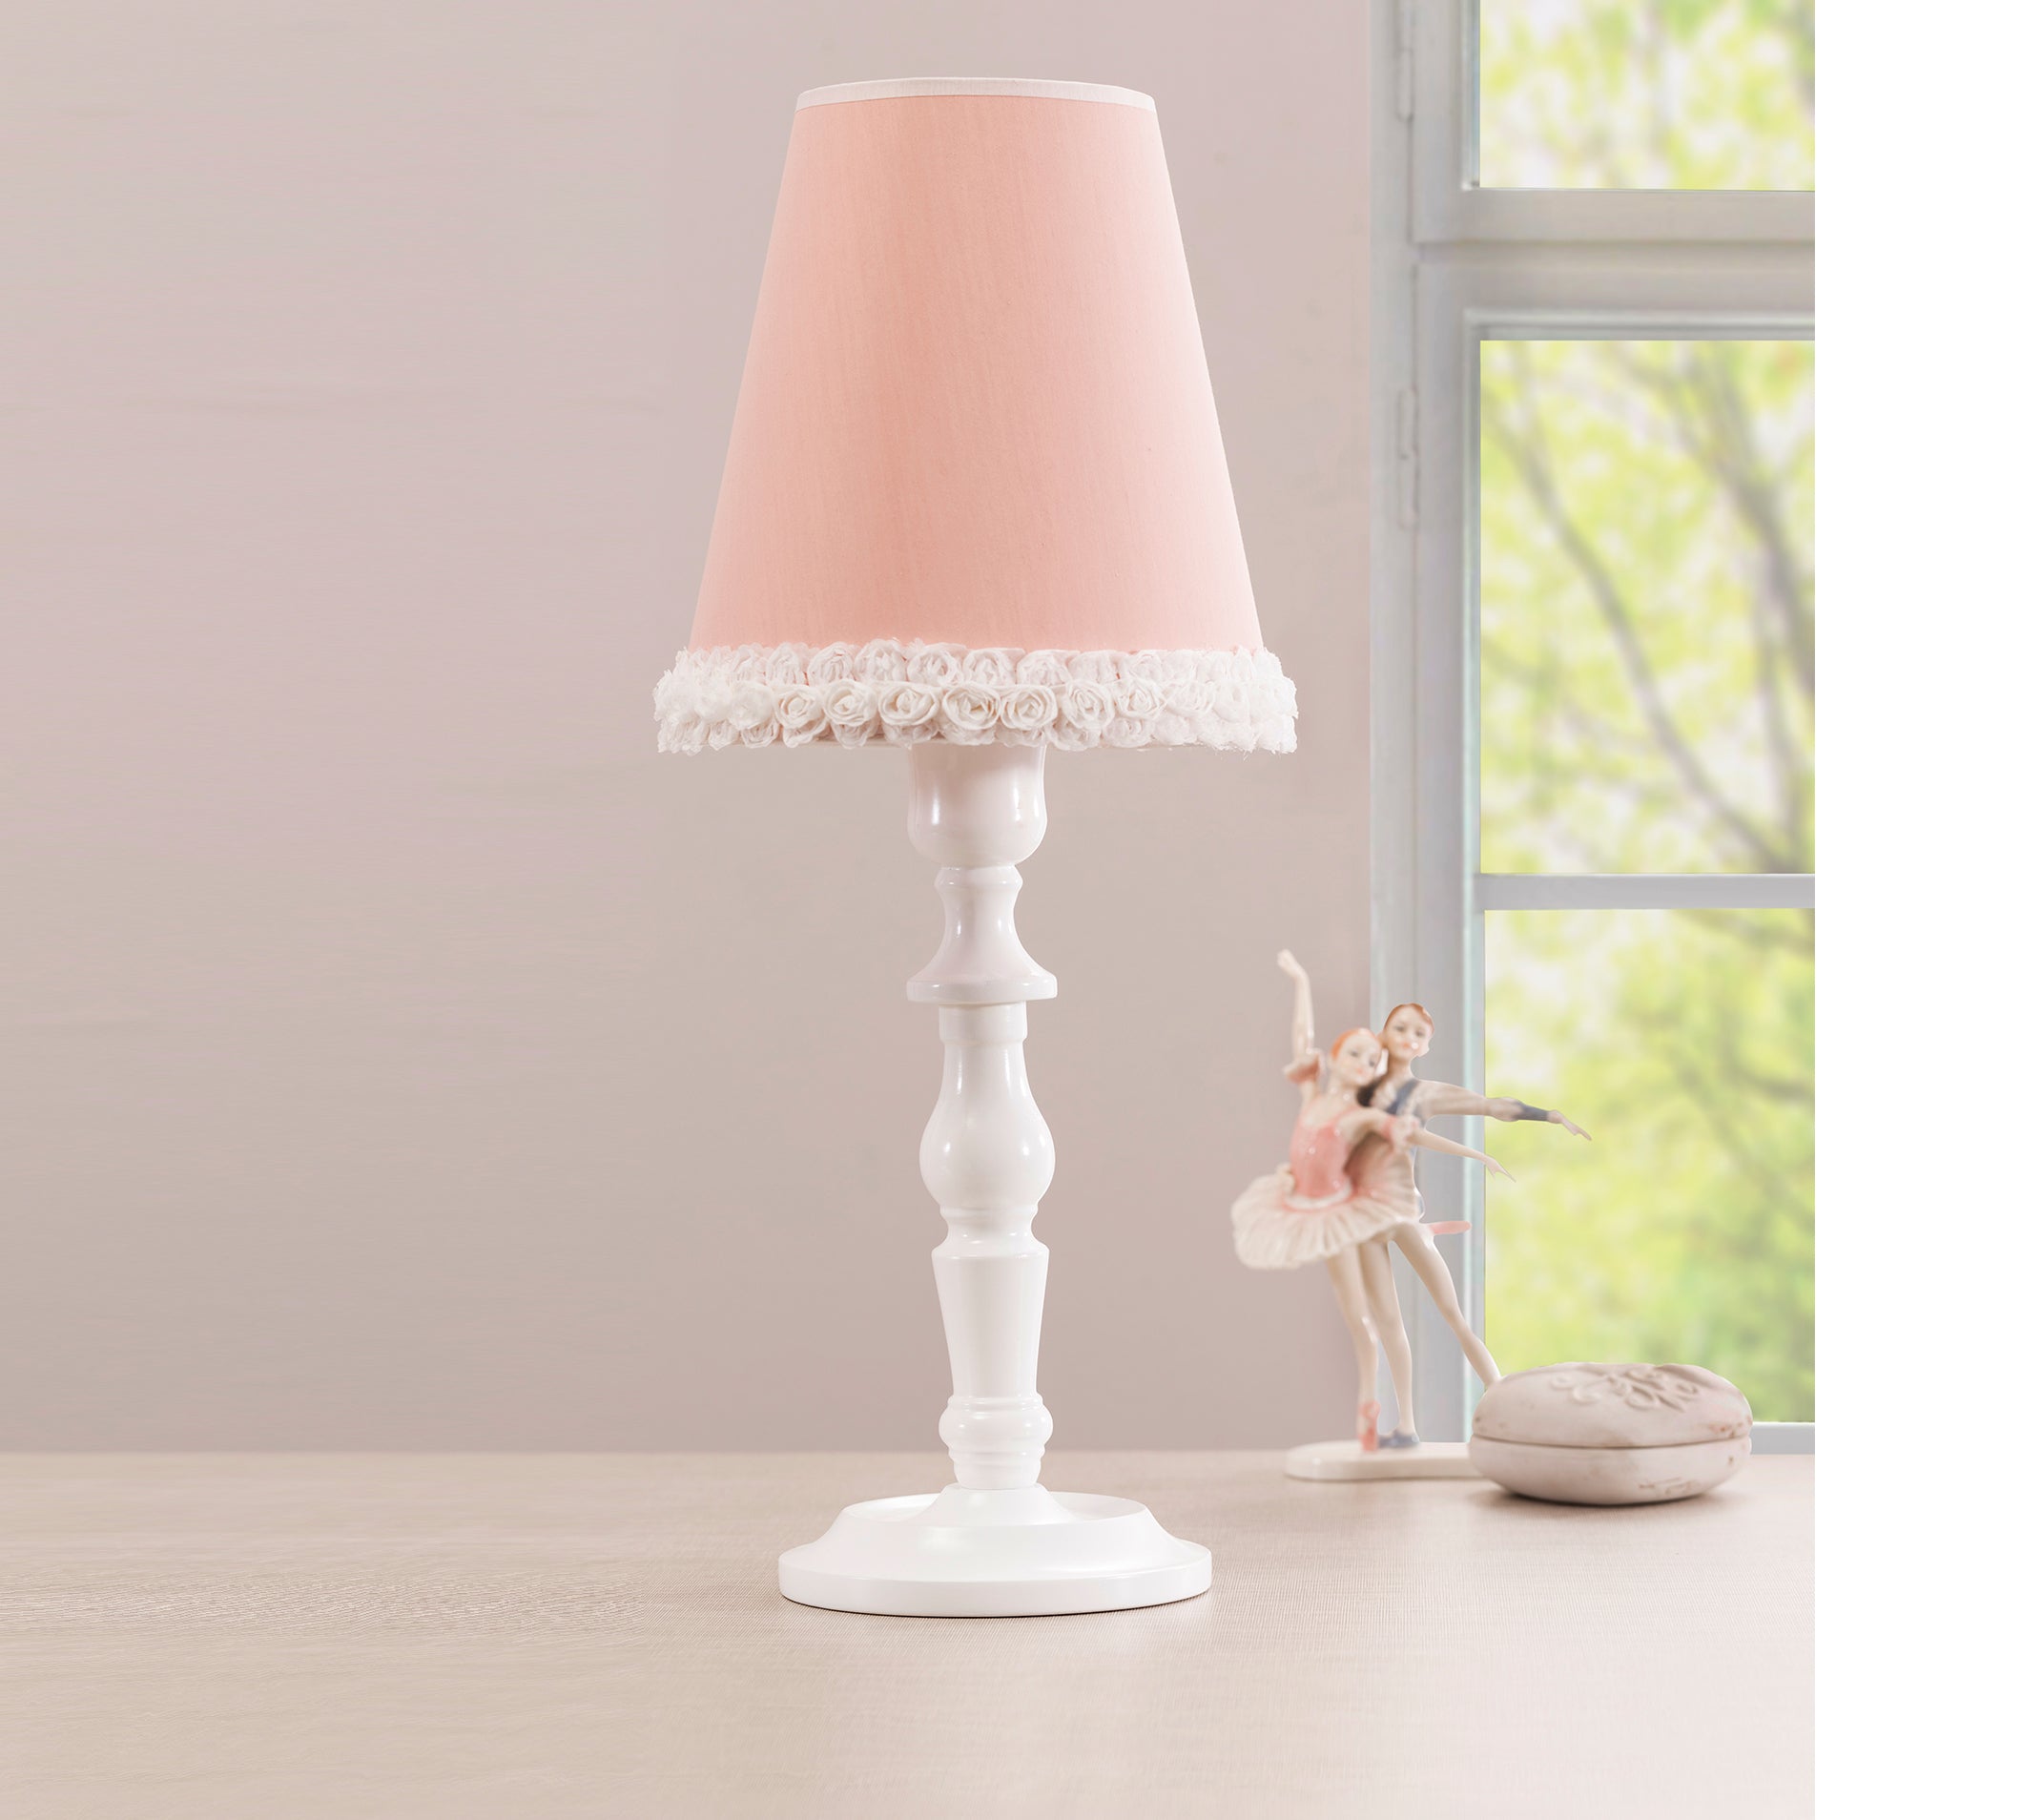 Dream lamp tafellamp